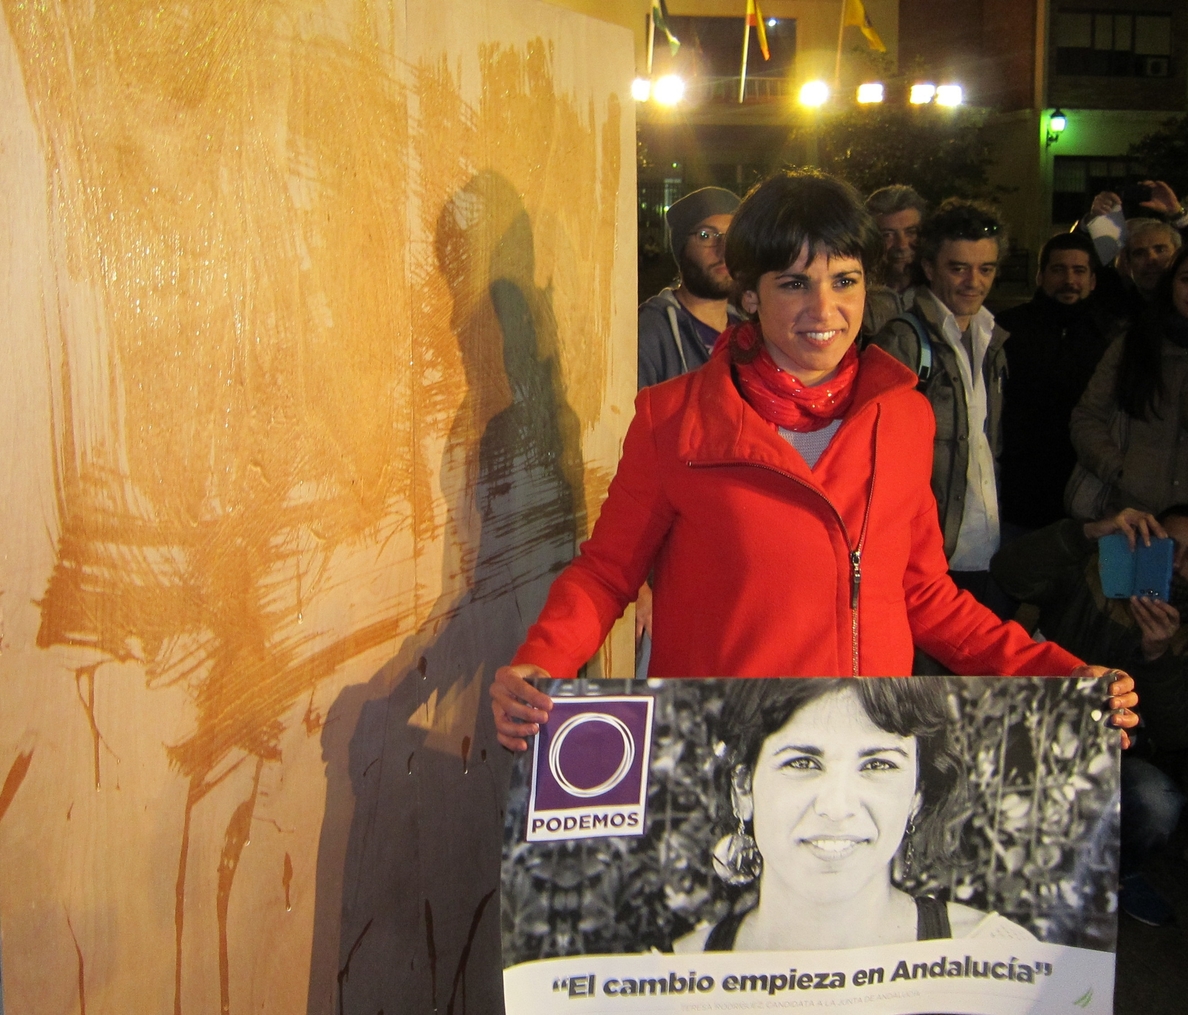 El rumor de una victoria de »Podemos» y las presuntas israelitas calientan Twitter